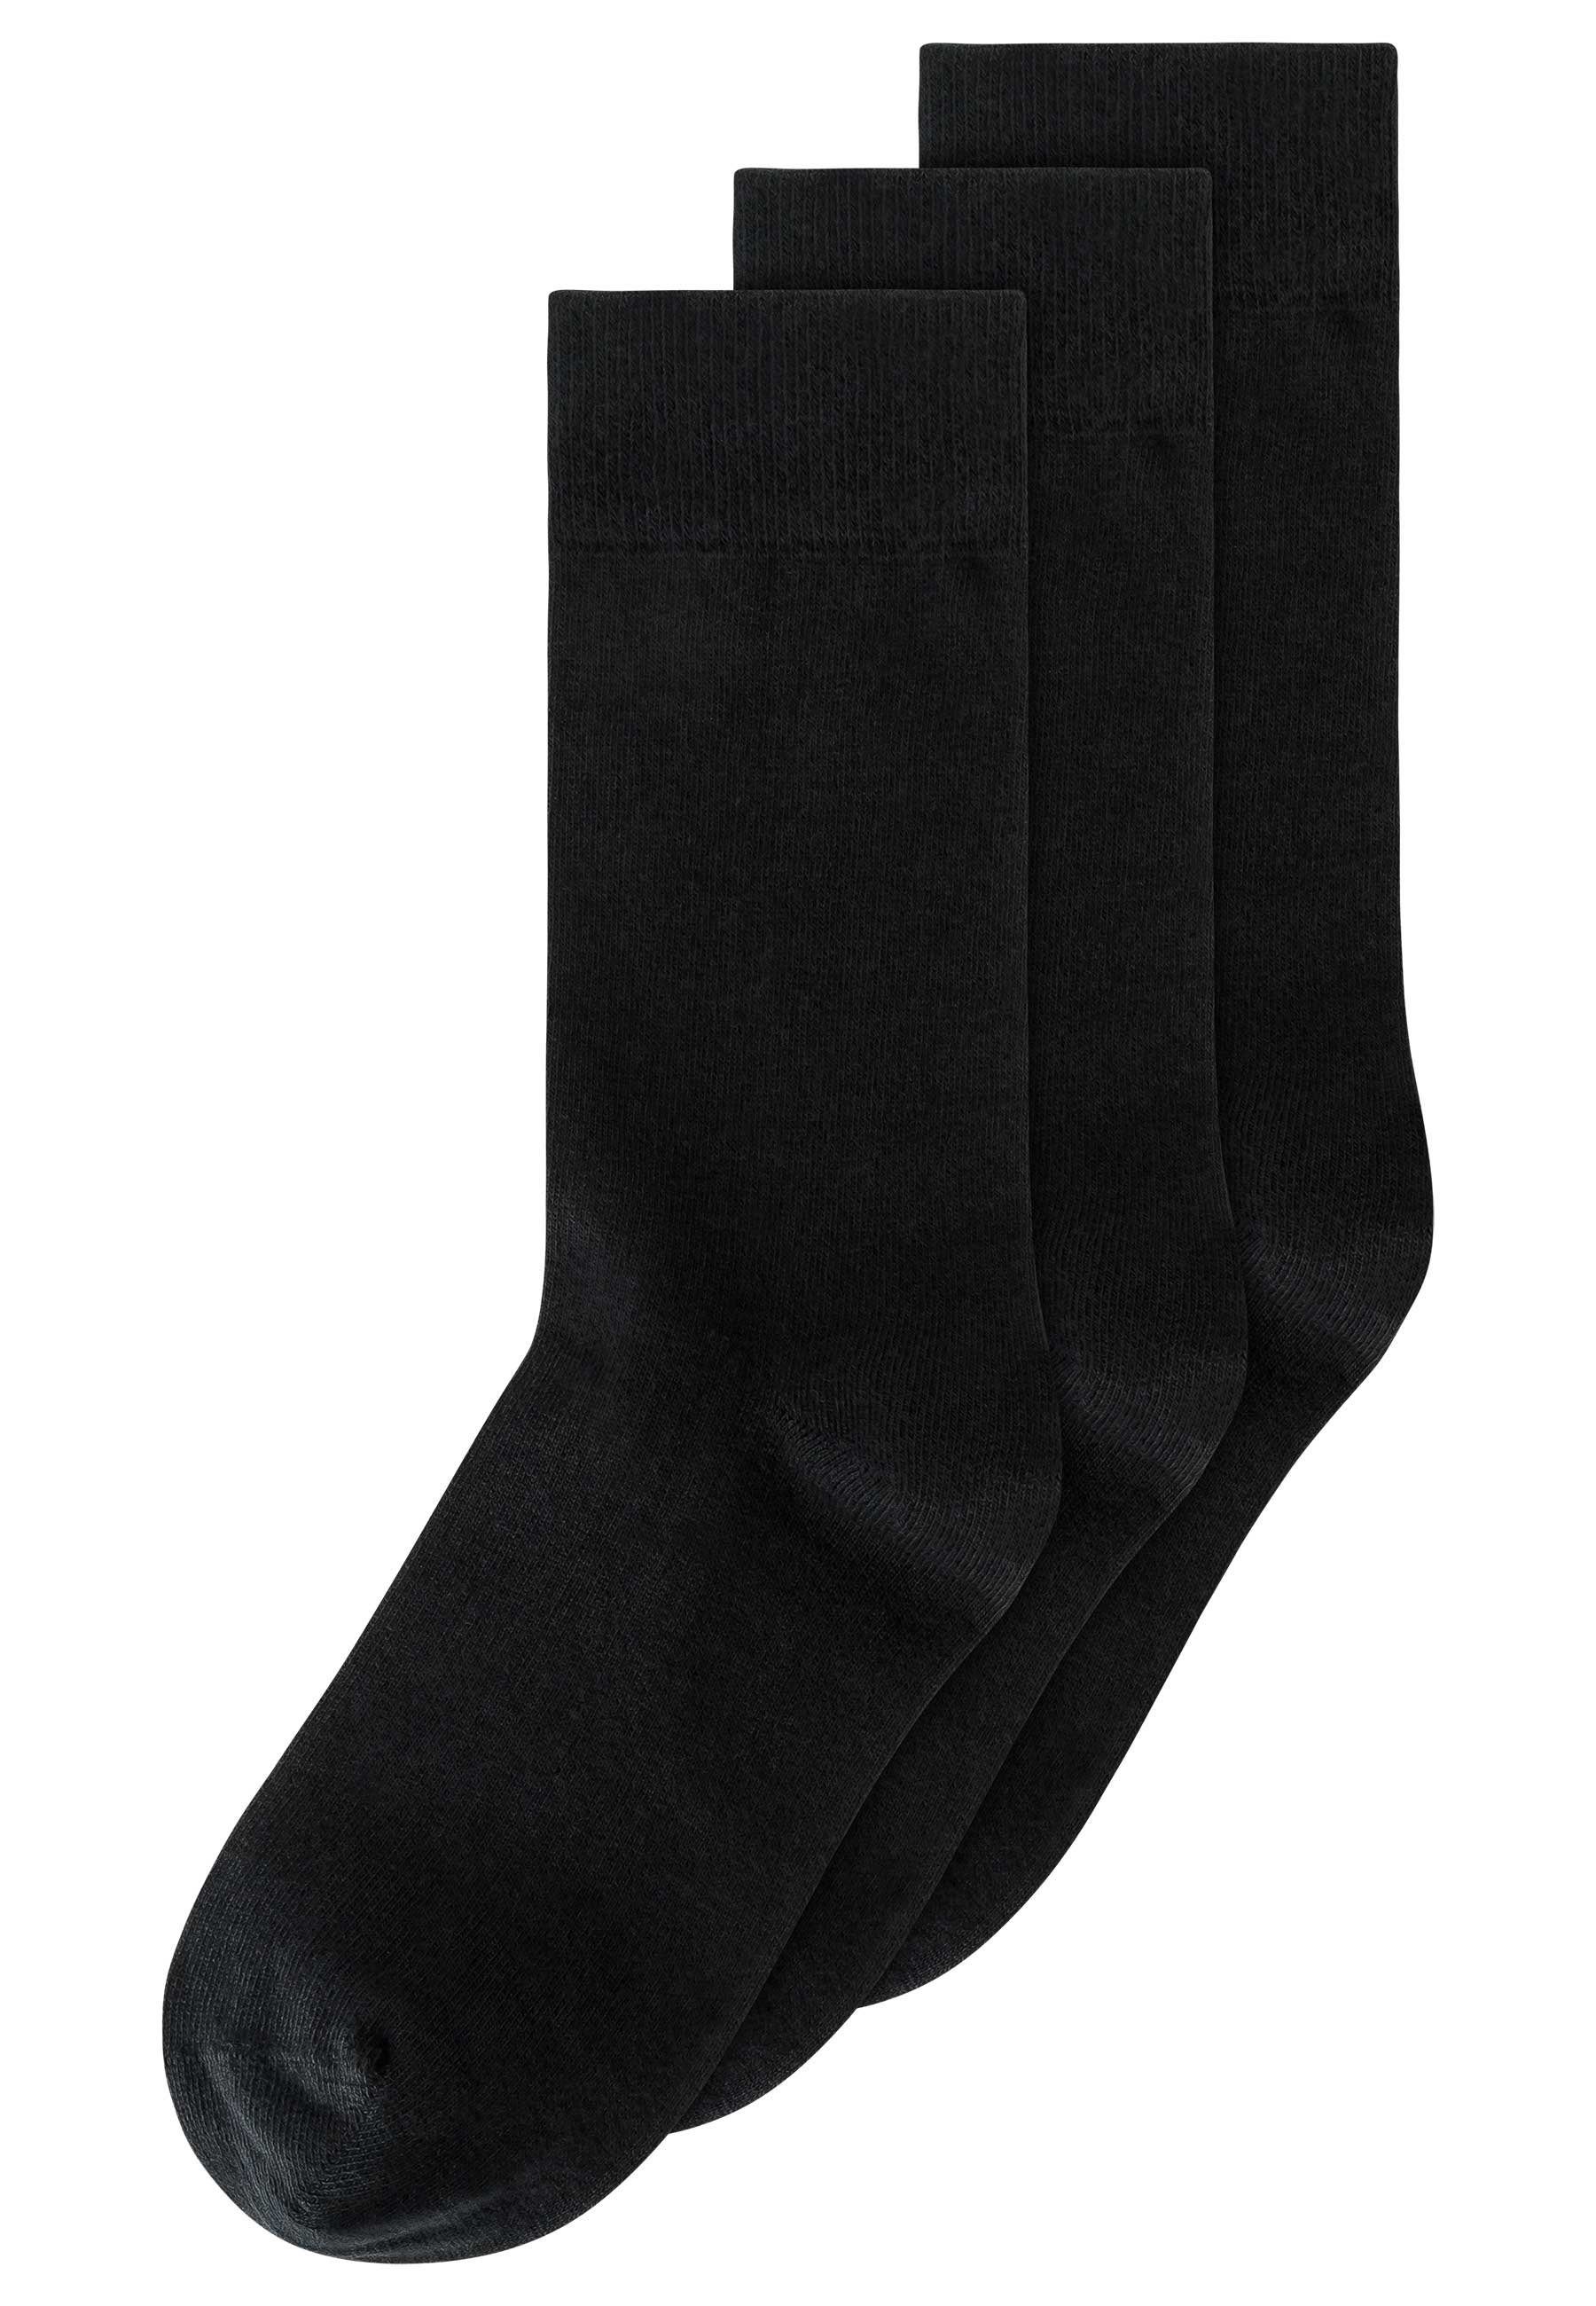 MELA Socken Socken 3er Pack Basic schwarz